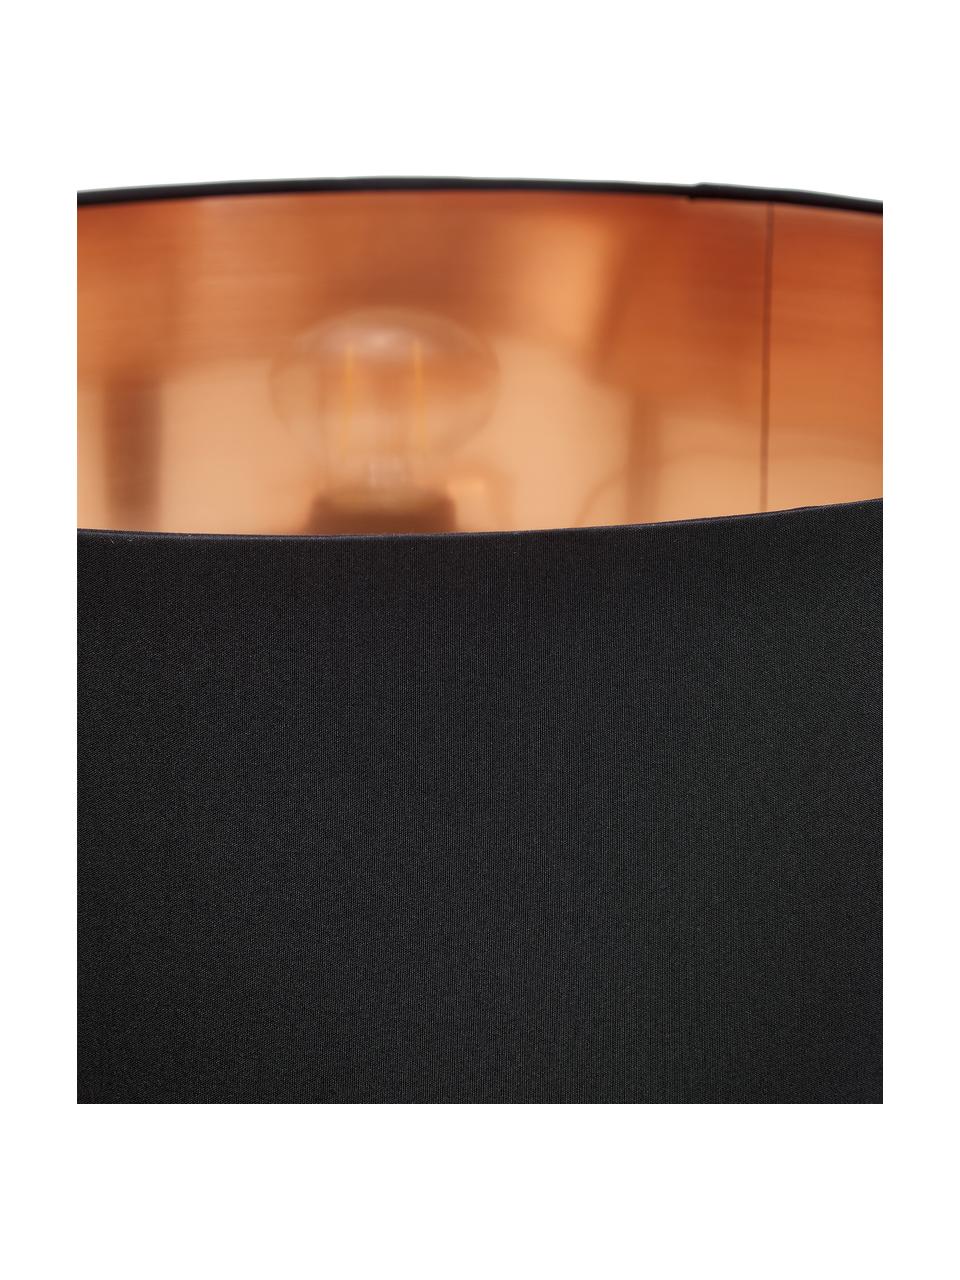 Stehlampe Camporale, Lampenfuß: Stahl, lackiert, Schwarz, Kupferfarben, H 154 cm